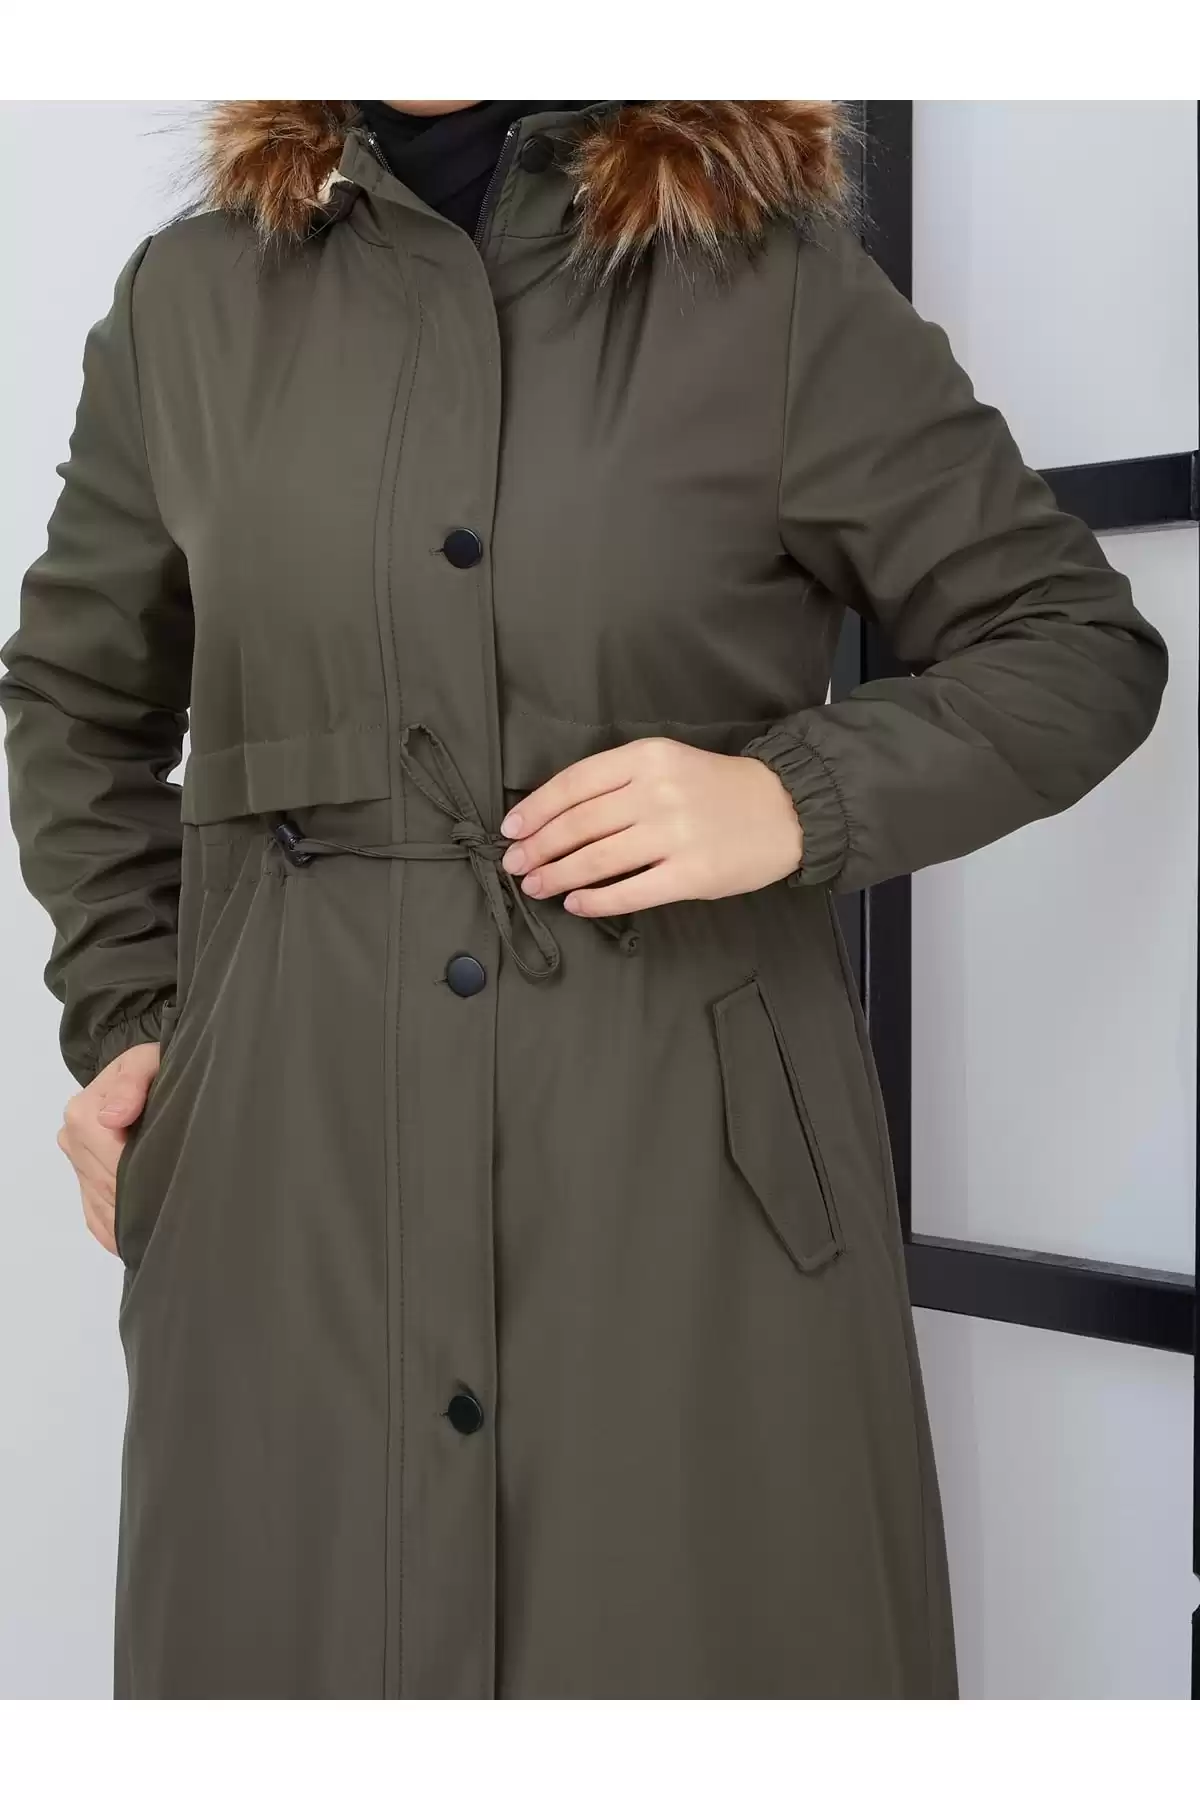 ژاکت ضد آب و ضد باد با خز داخلی جیب Epaulette - خاکی برند   Qenz(قنز) به رنگ  خاکی مدل  زمستانی